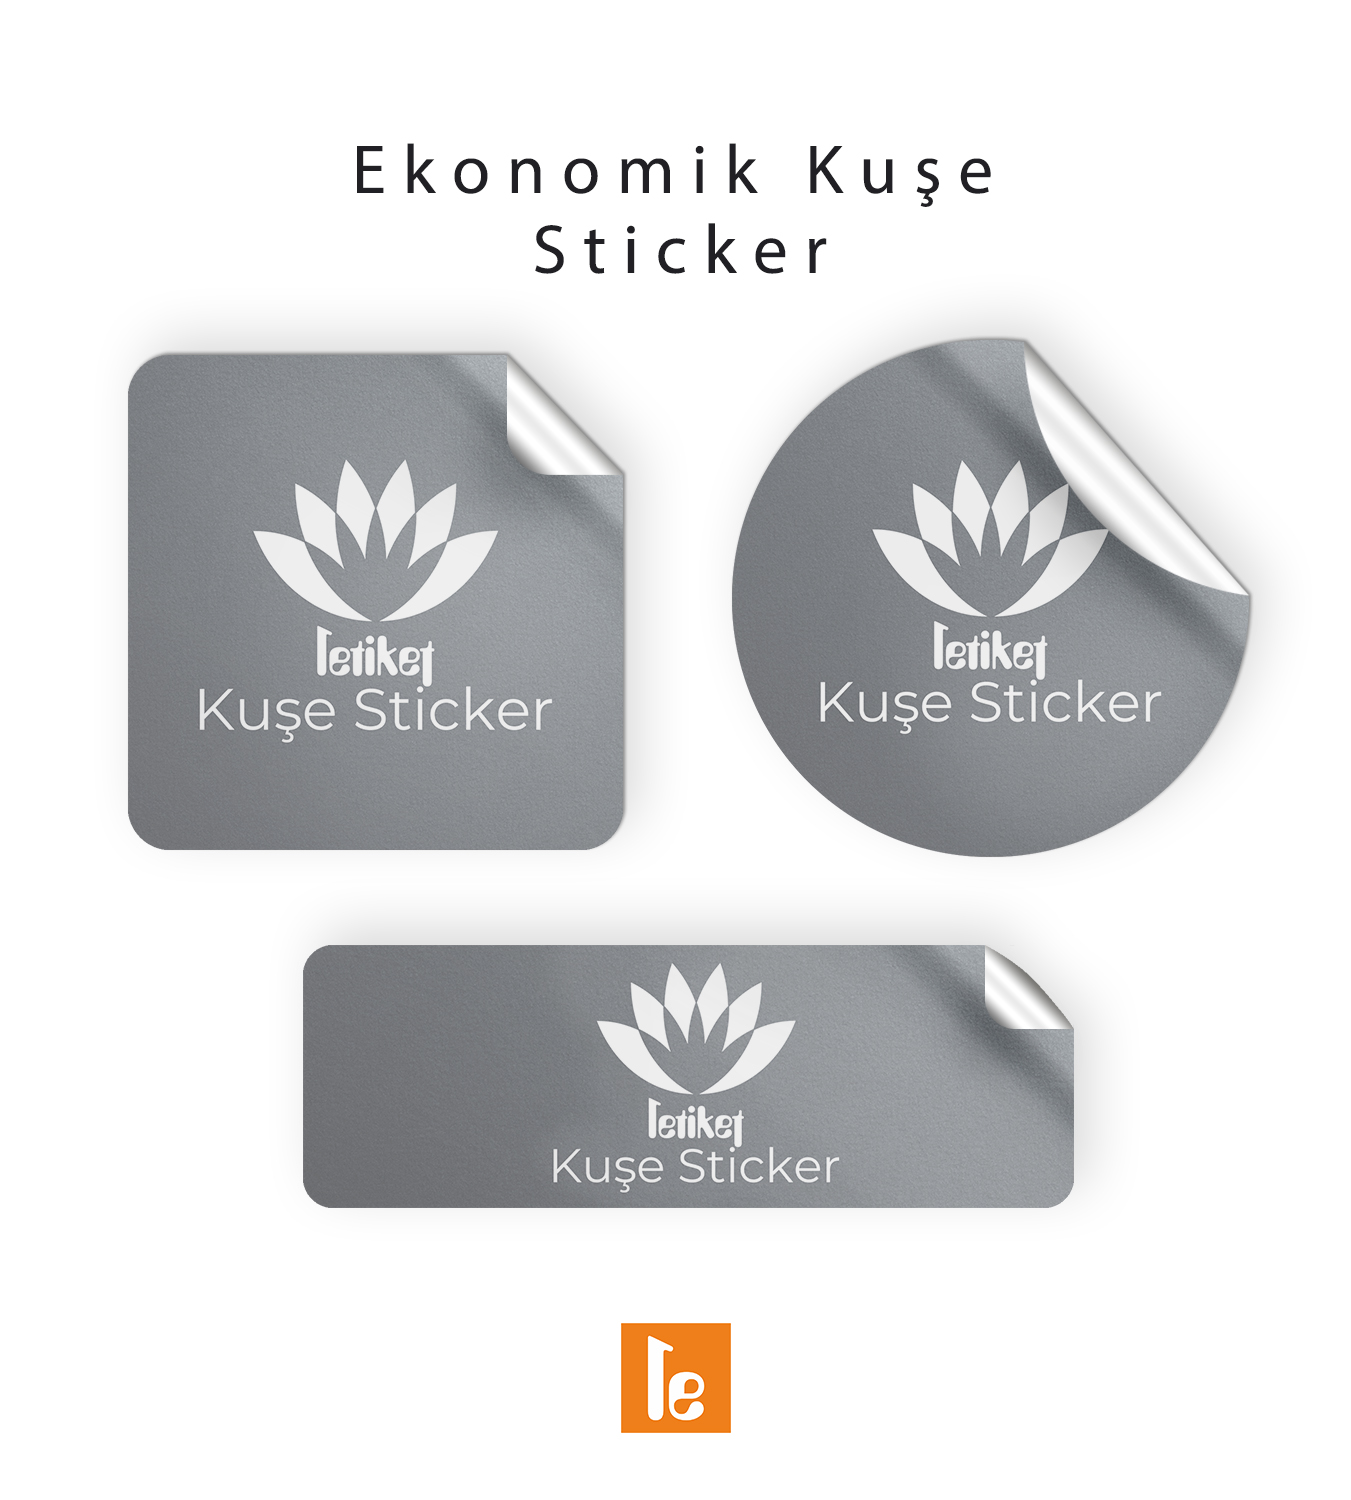 10.4×16.4 cm Ekonomik Düz Kesim Sticker/Etiket